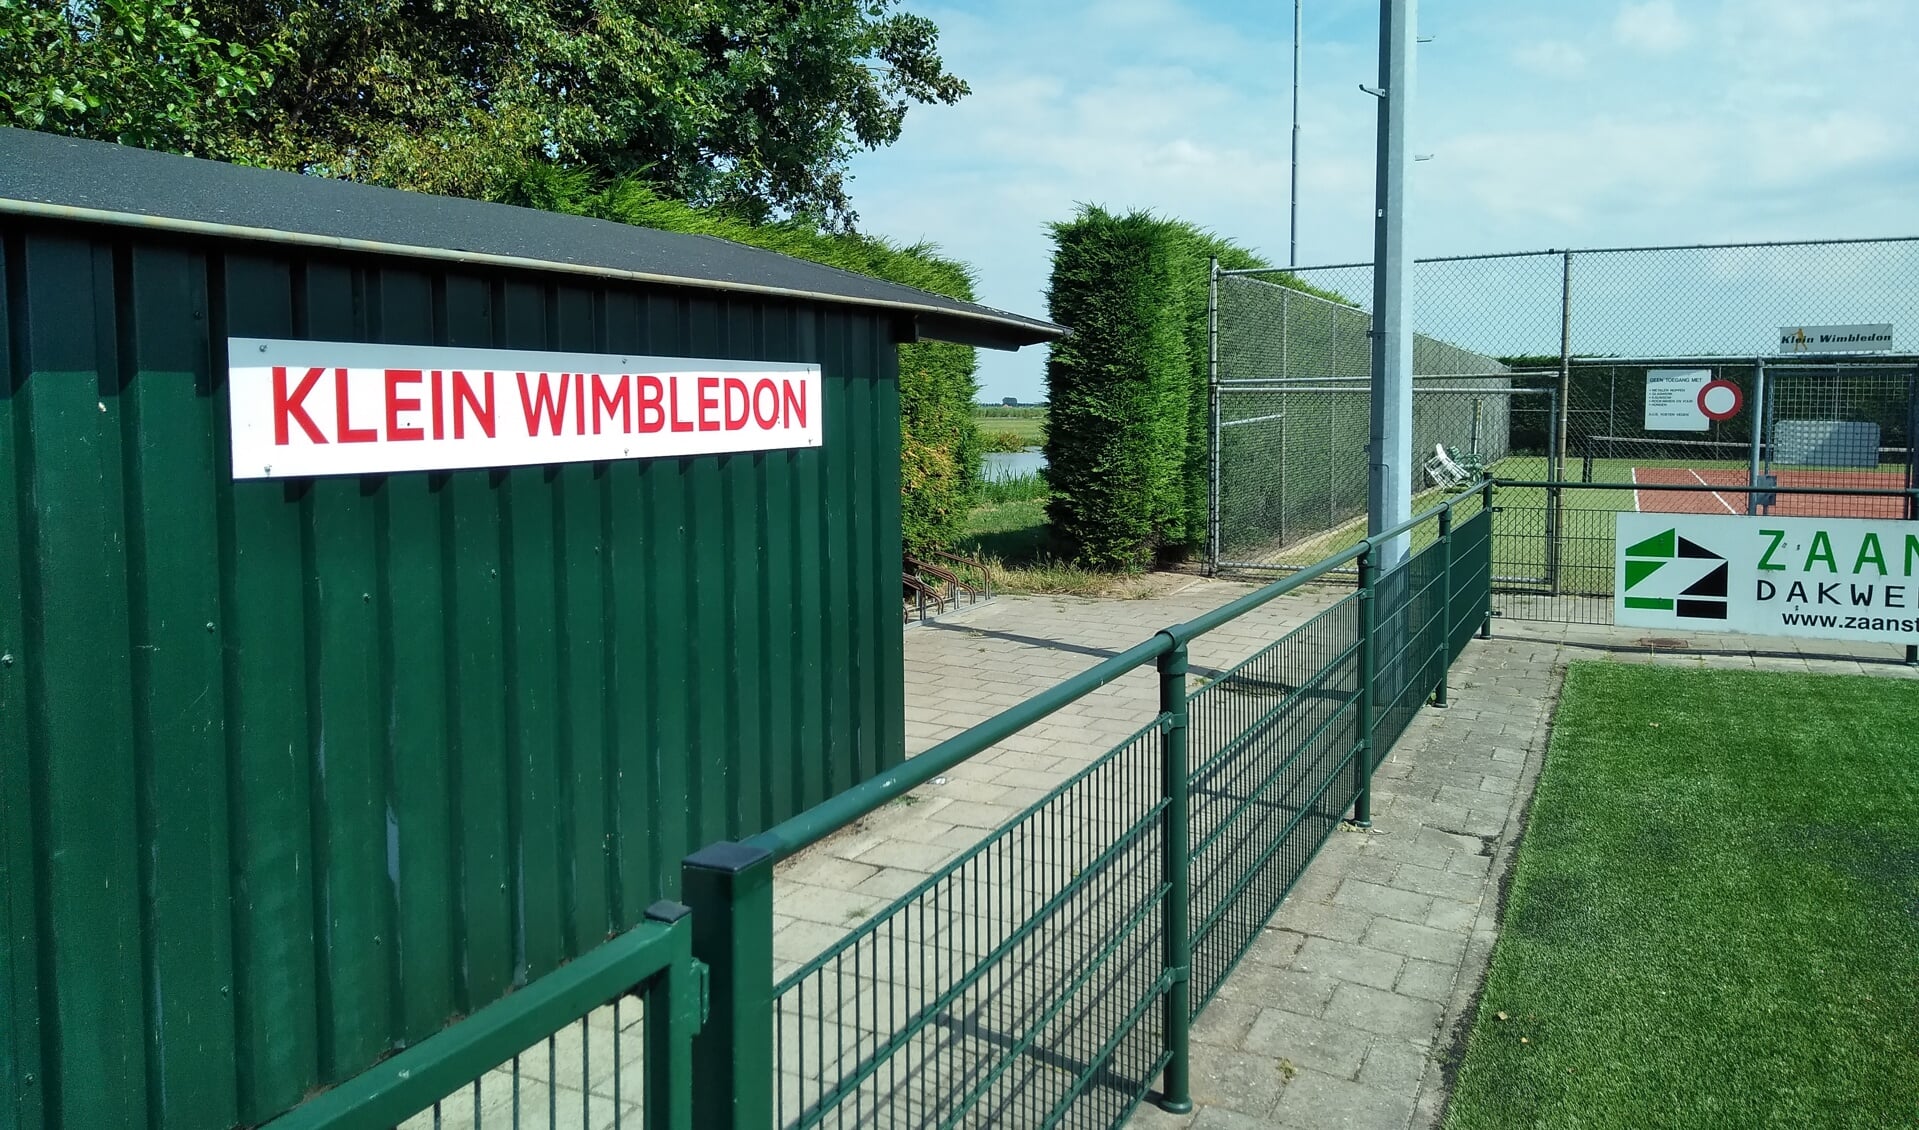 Passanten in Oostknollendam worden vanaf de dijk middels het nieuwe bord op tennispark Klein Wimbledon gewezen. (Foto: Bart van der Laan)